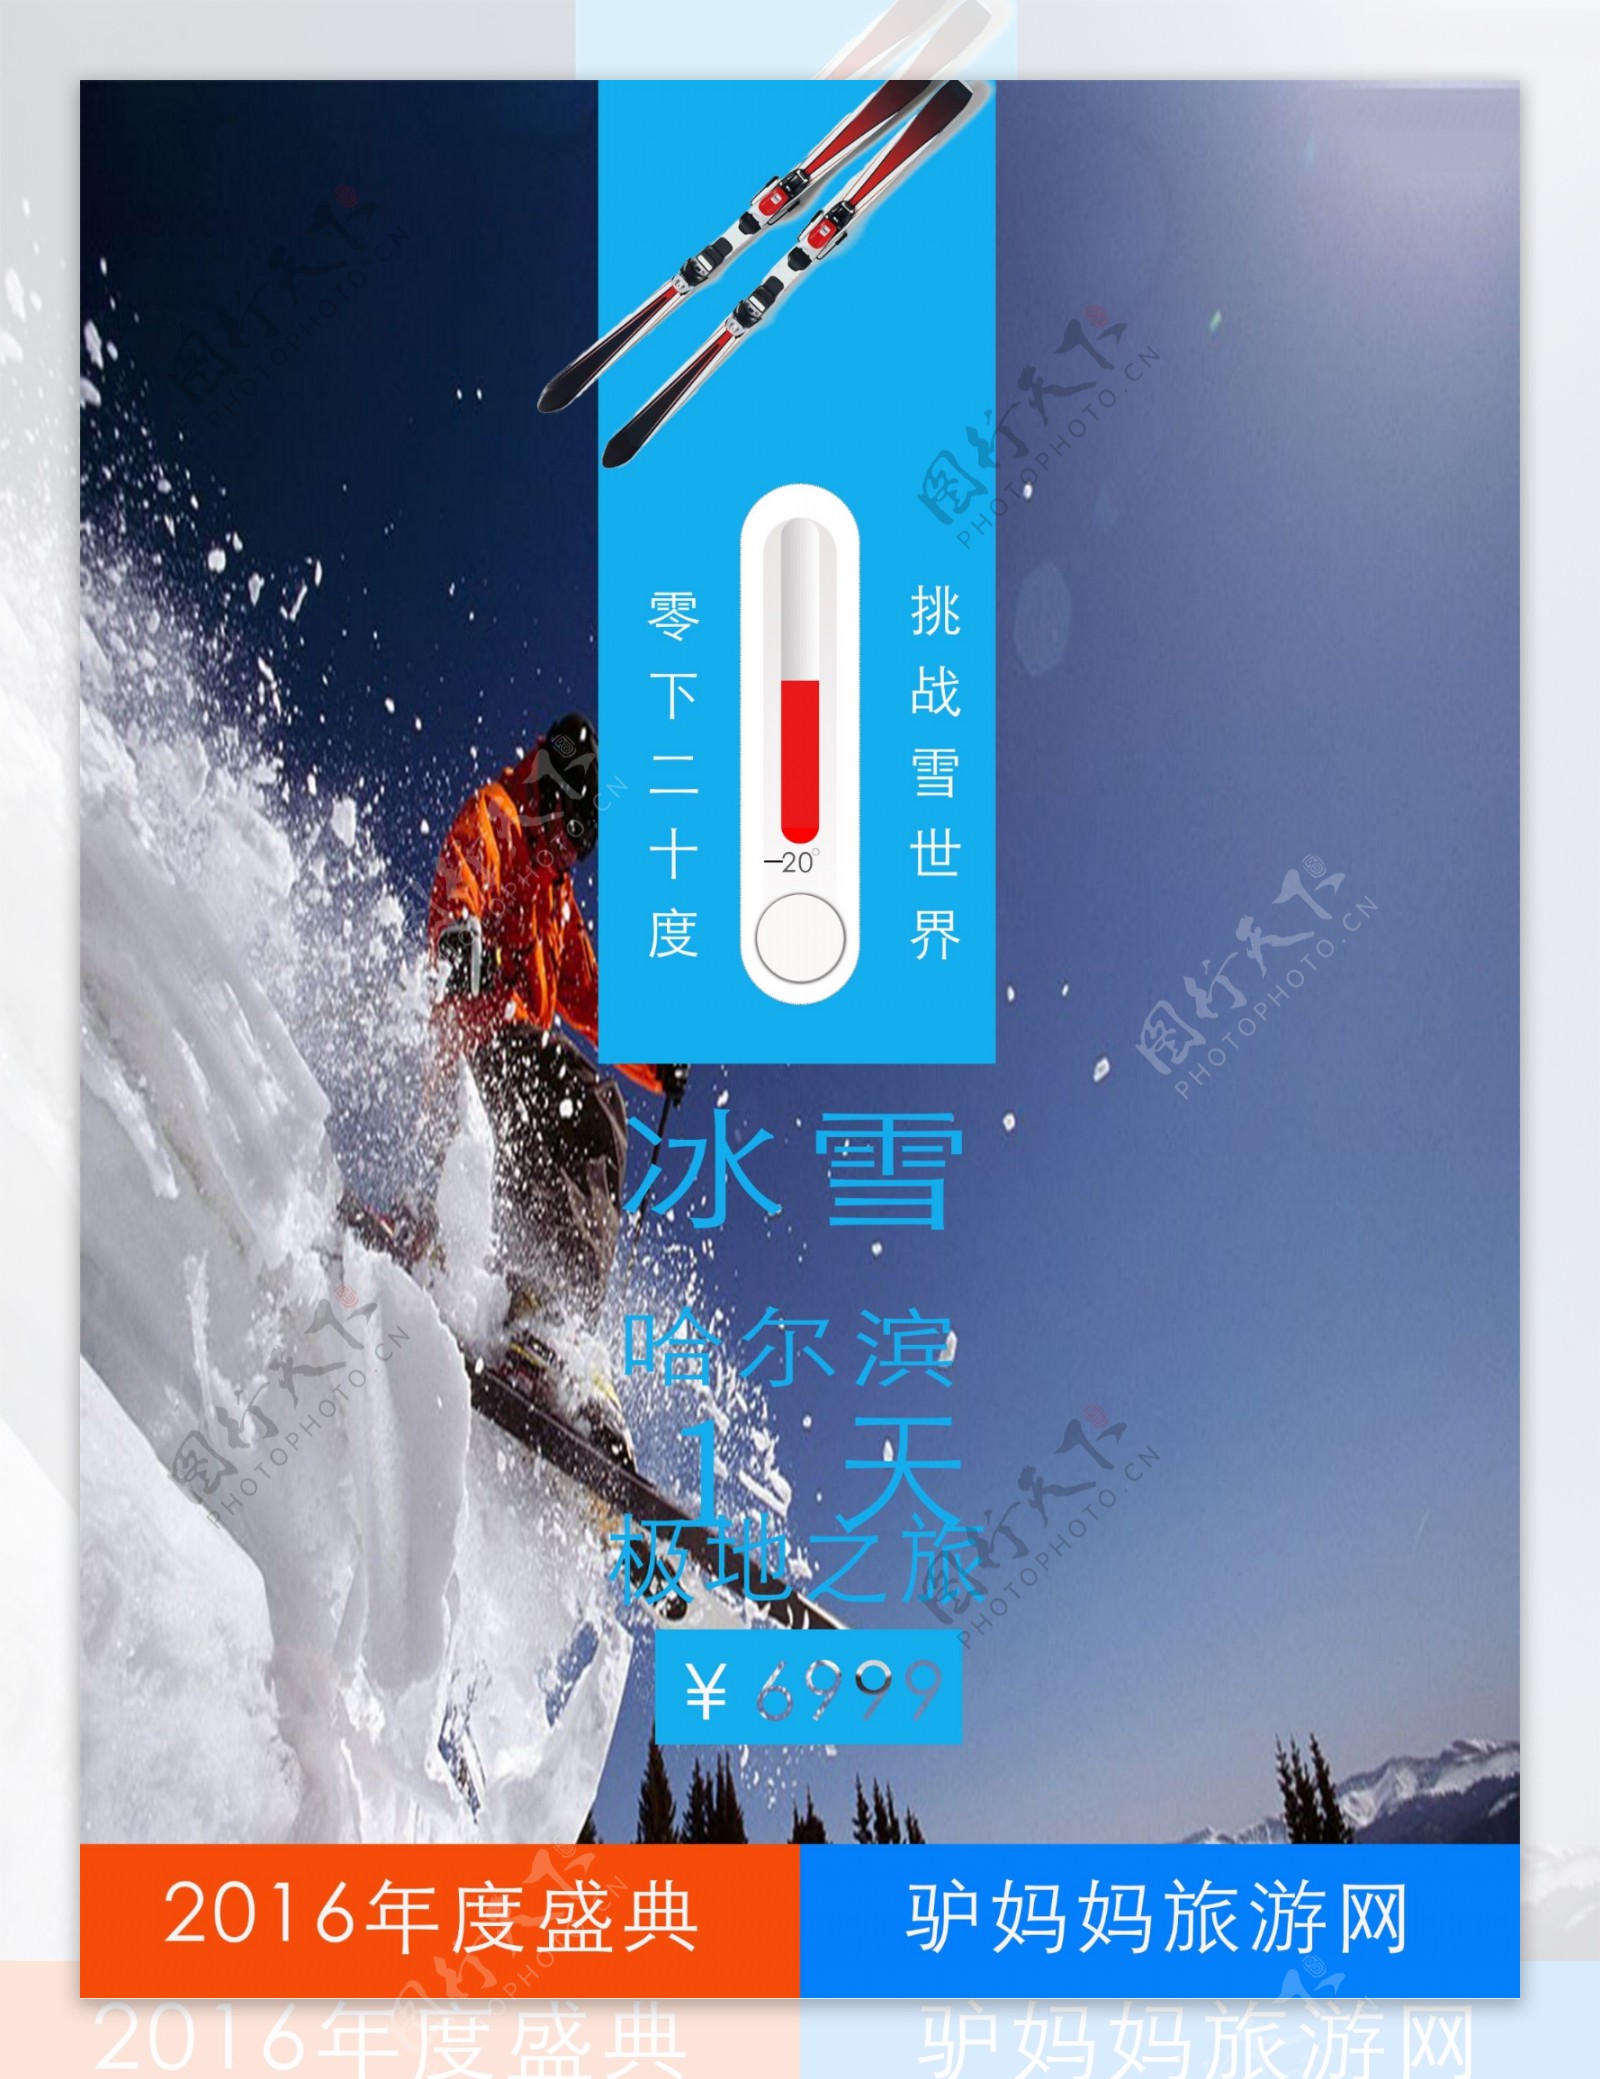 滑雪主题旅游海报